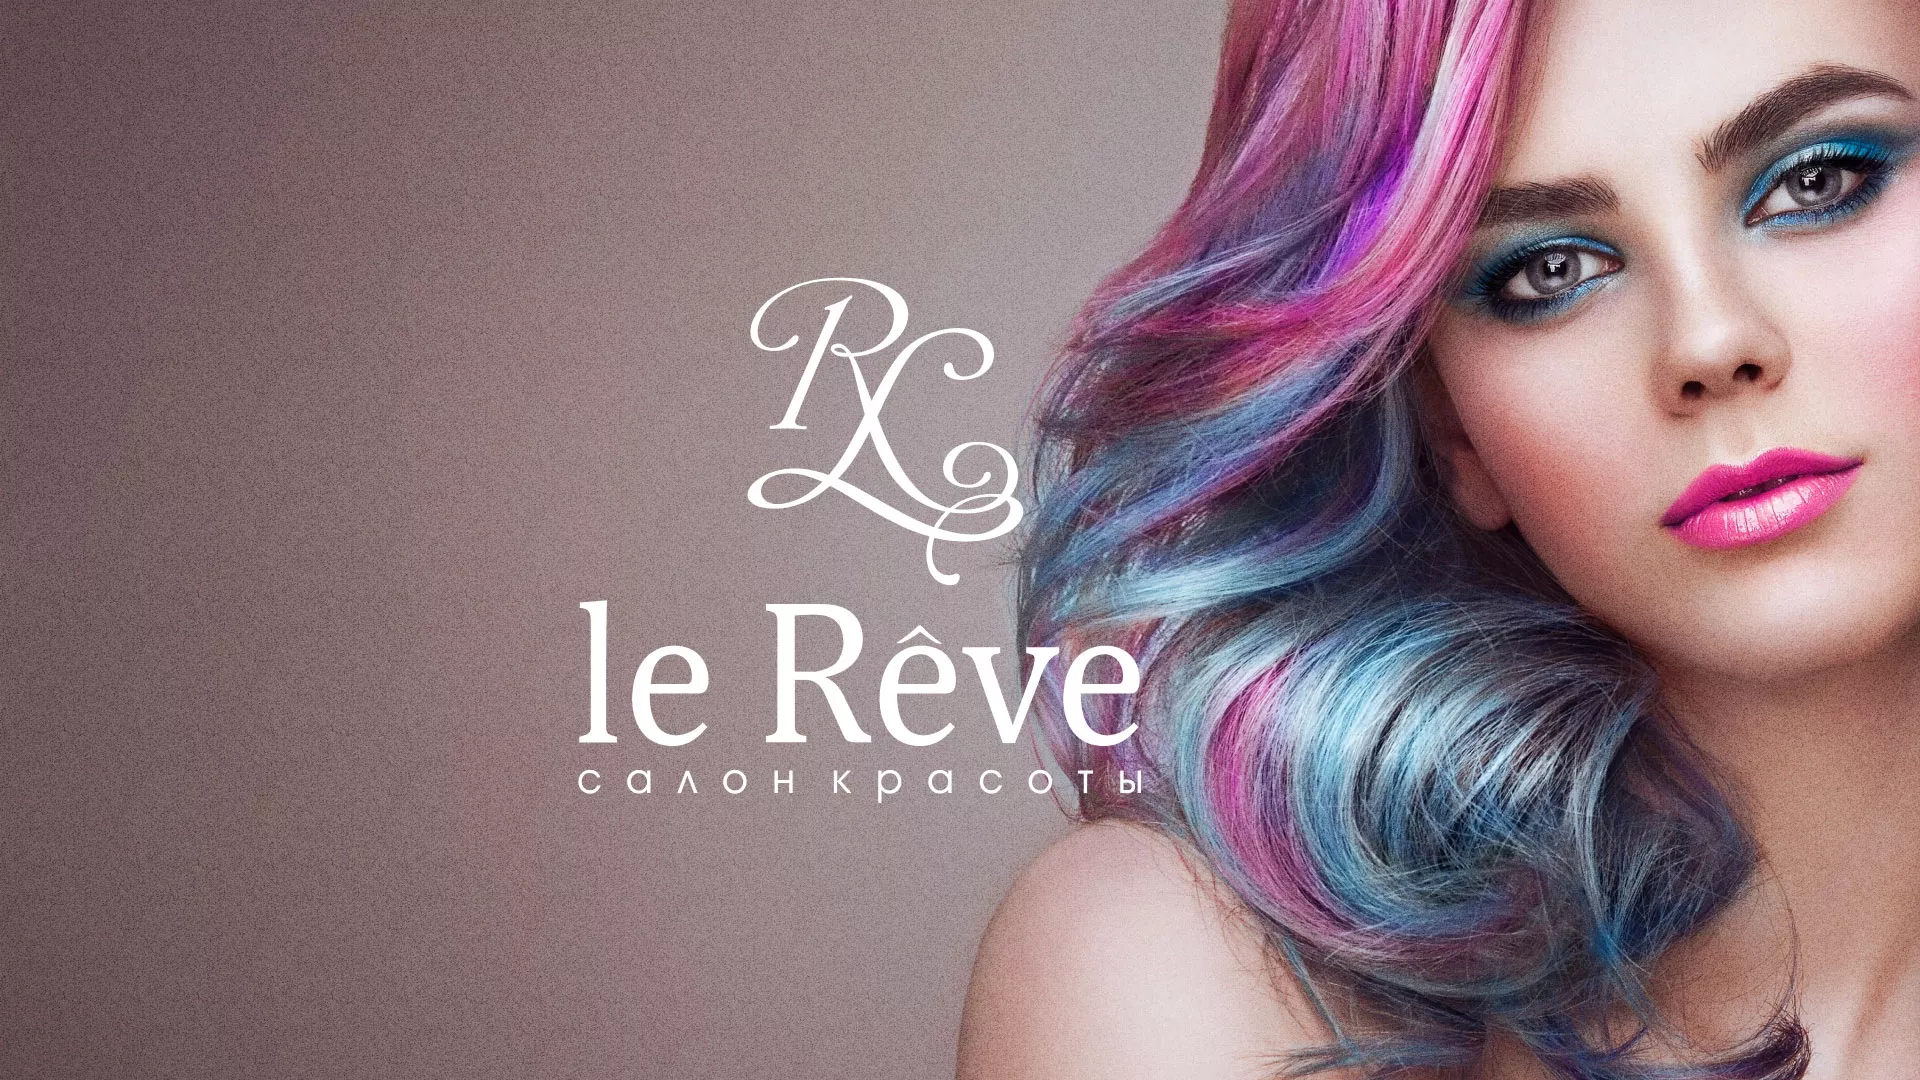 Создание сайта для салона красоты «Le Reve» в Ржеве